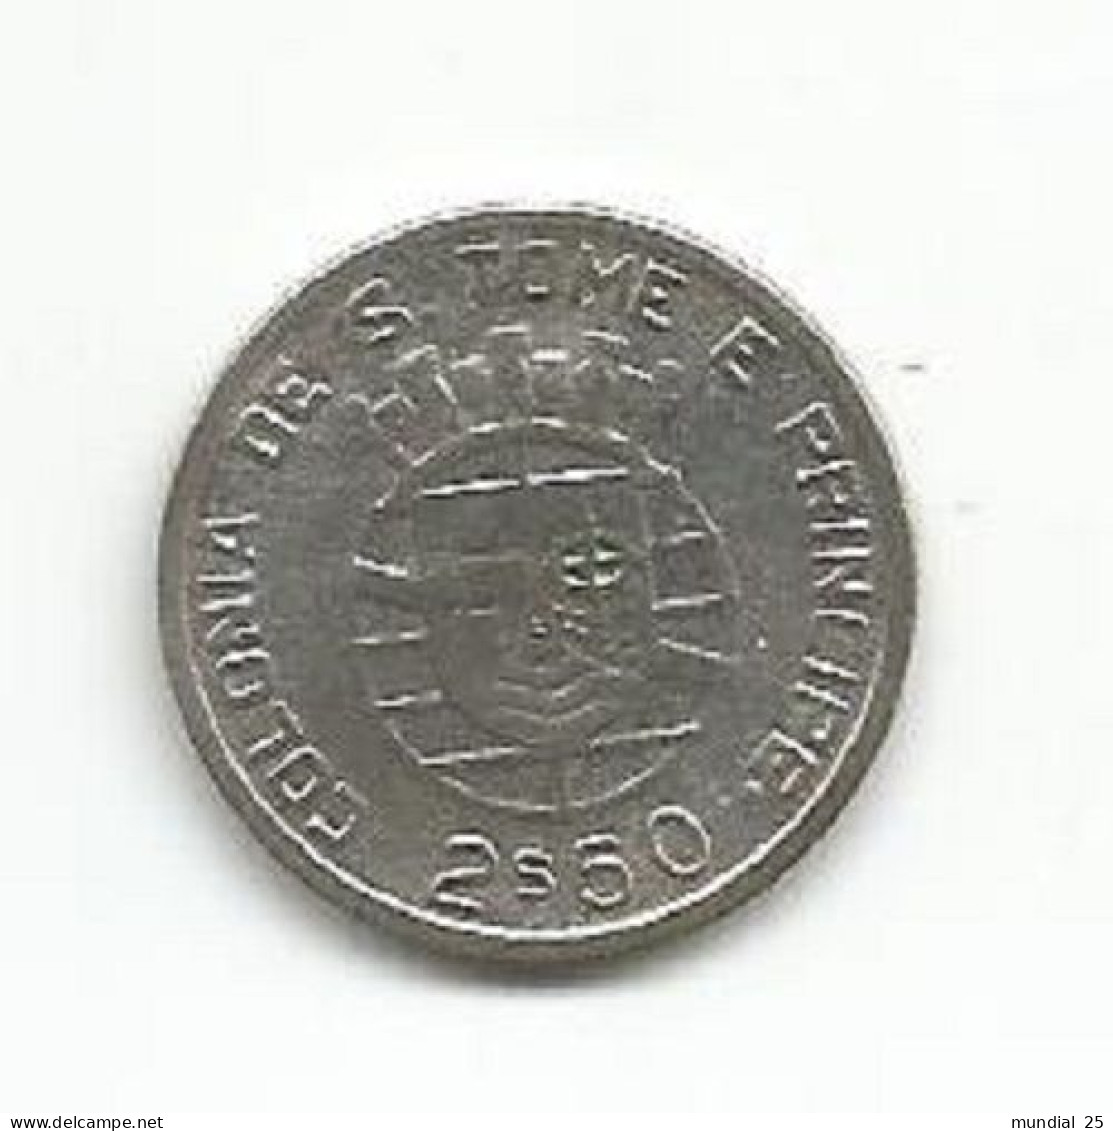 SAO TOME AND PRINCIPE PORTUGAL 2$50 ESCUDOS 1939 SILVER - Sao Tome And Principe